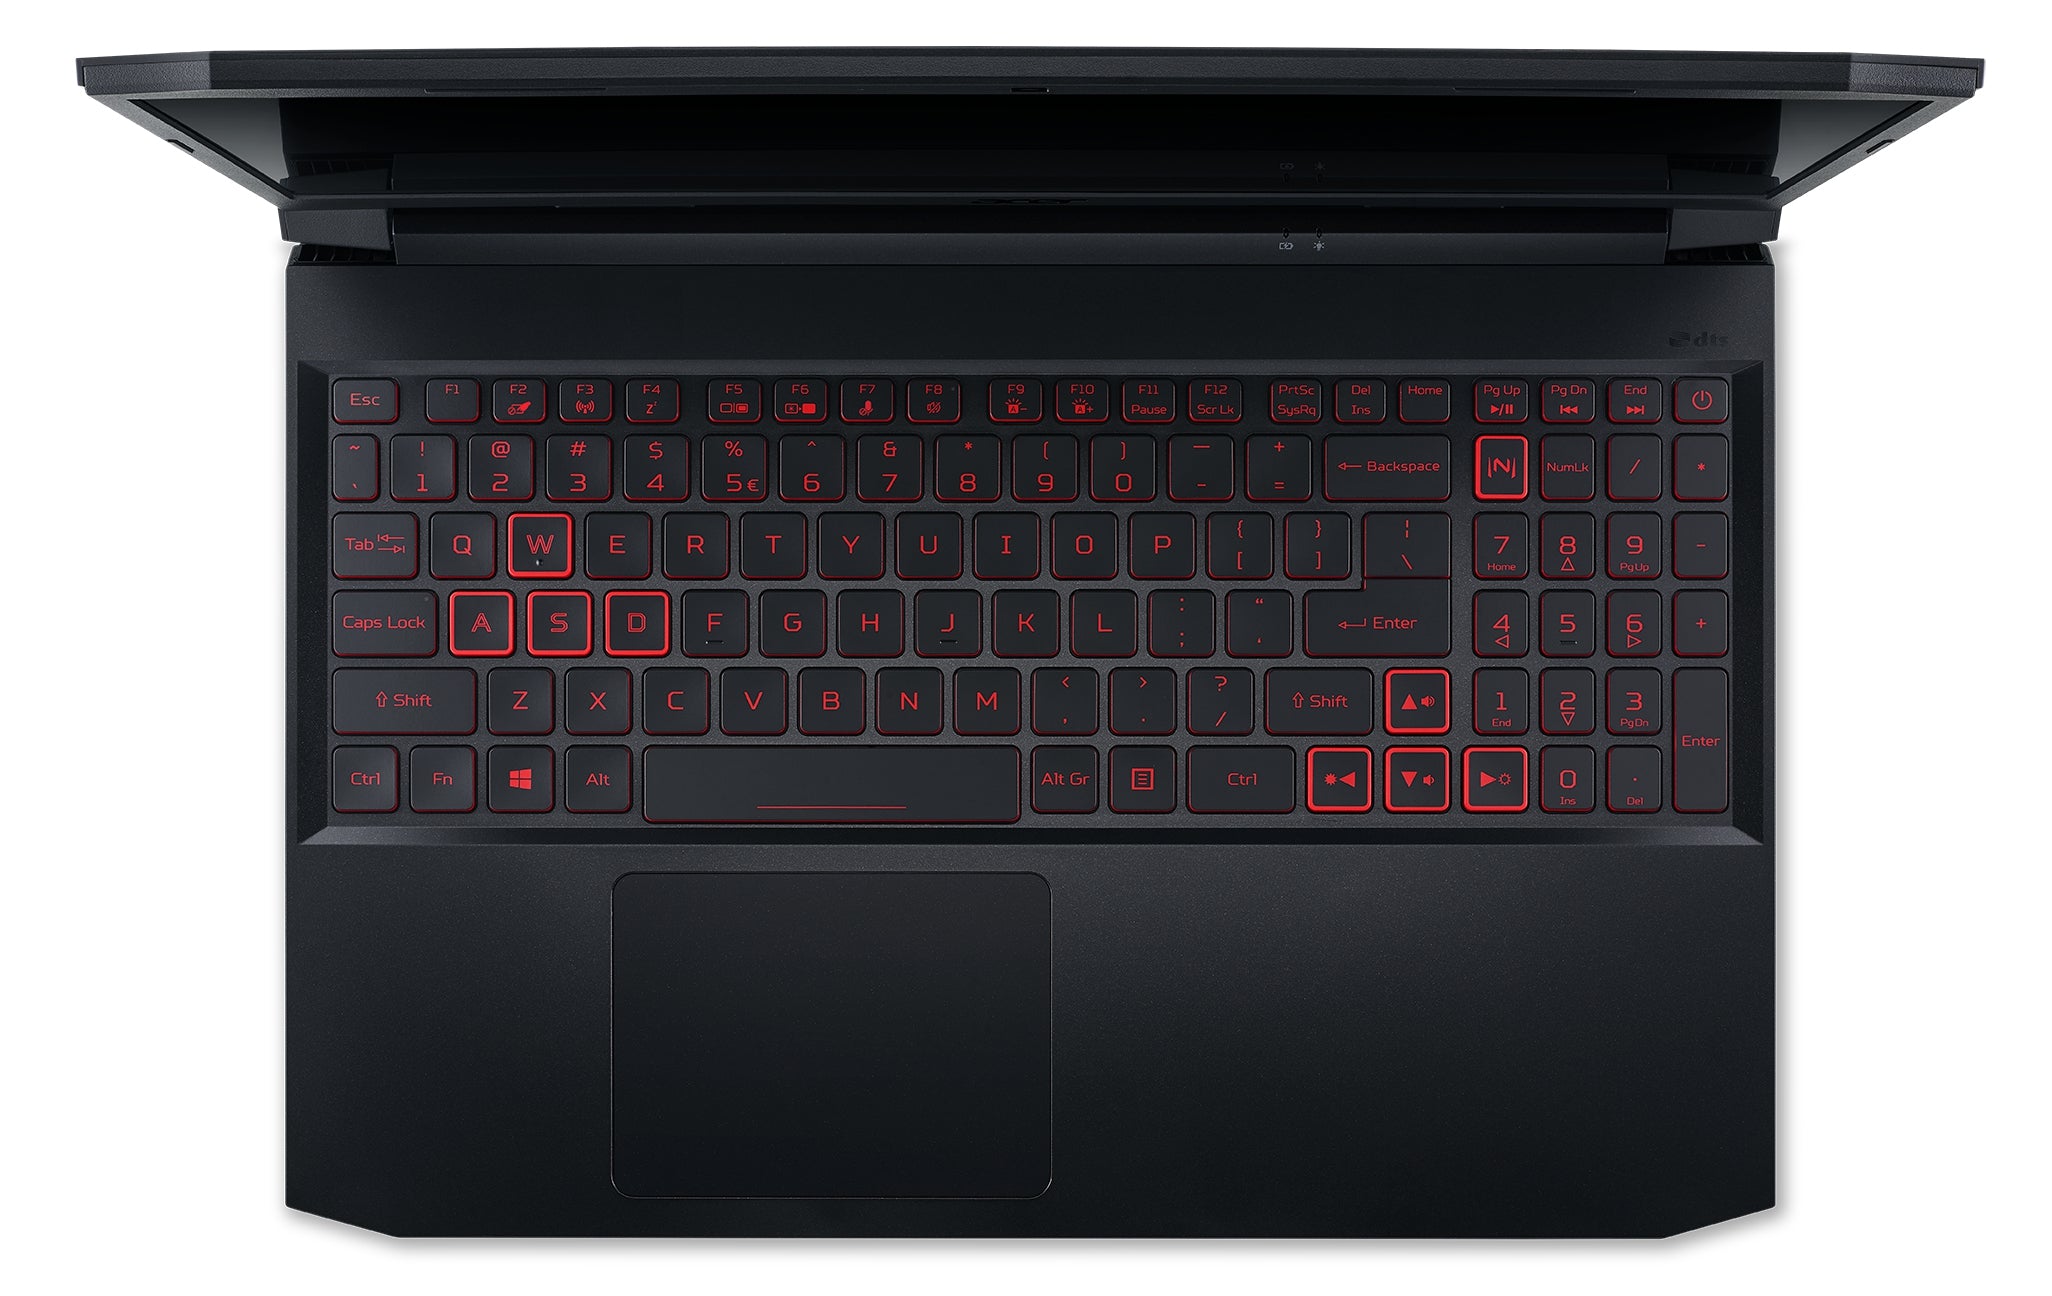 Laptop Acer Nitro 5 Gamer I5-11400H 8Gb256Gb+1Tb Gtx 1650 4Gb Windows 11H 15.6 Año De Garantia En Cs Contra Robo; Teclado Retroiluminado Rojo